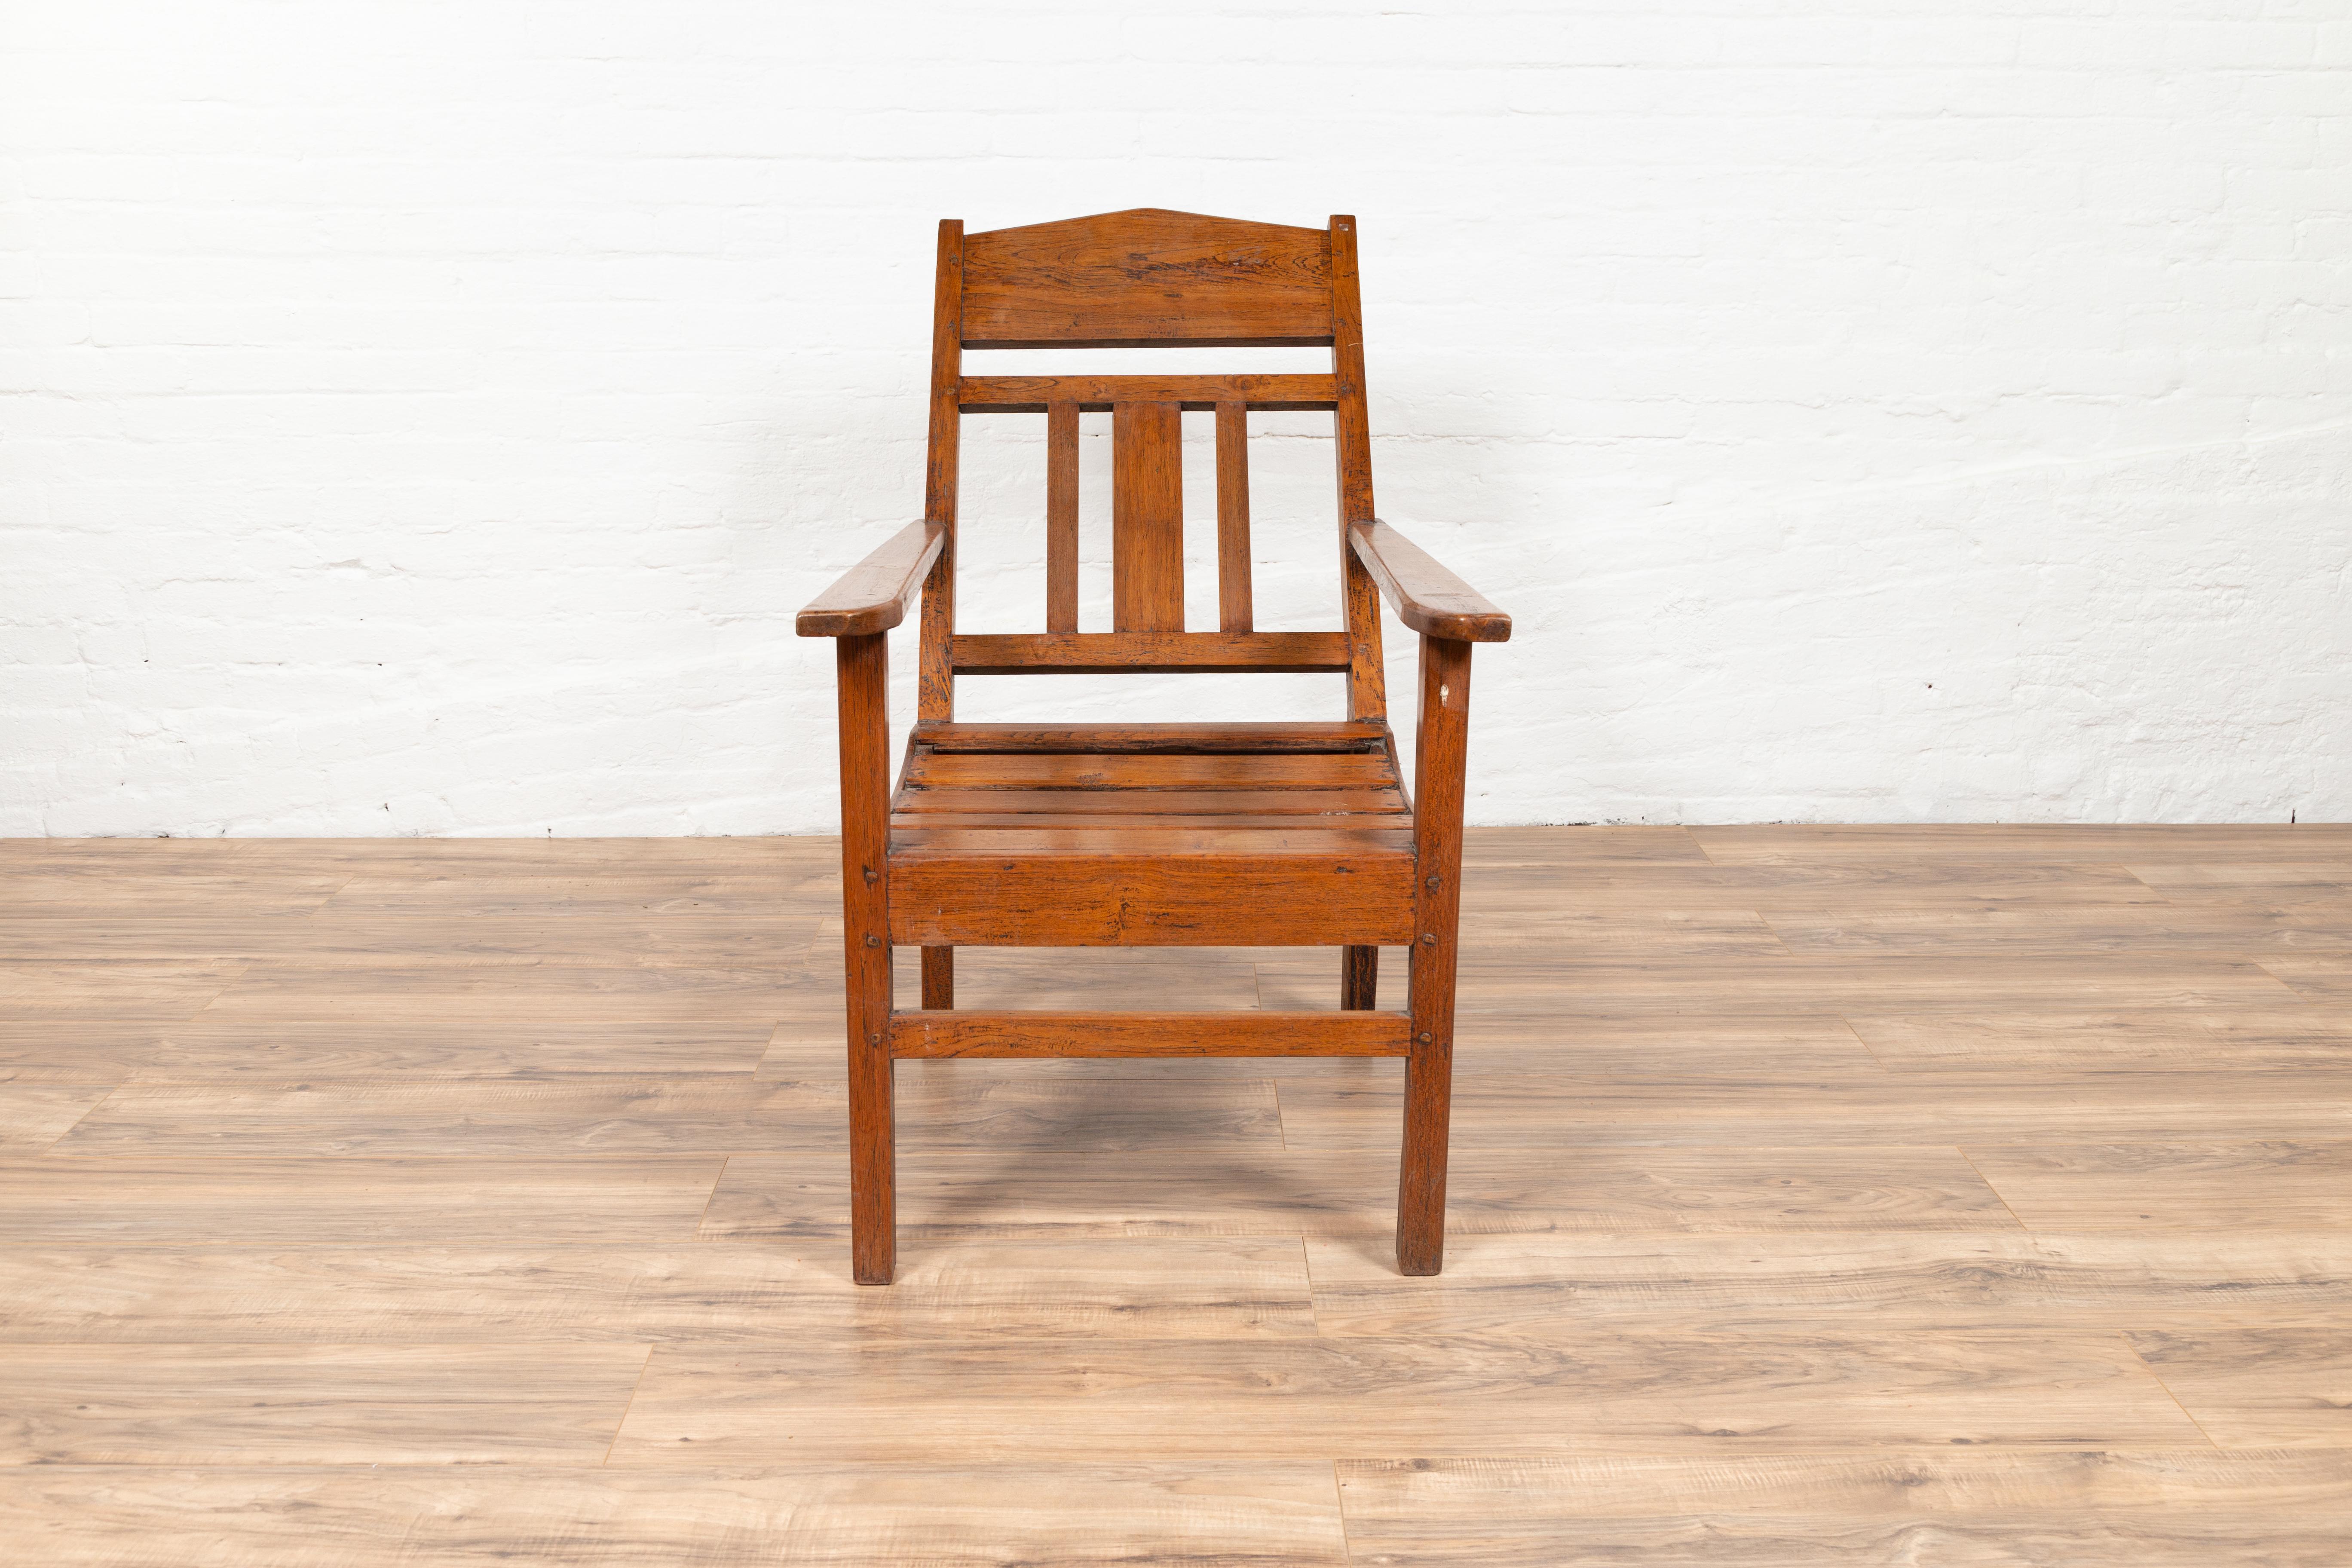 Une chaise longue de plantation javanaise coloniale néerlandaise vintage de Madura, Indonésie. Née à Madura, au large de la côte nord-est de Java, cette chaise longue de style colonial néerlandais est conçue pour offrir une expérience relaxante à